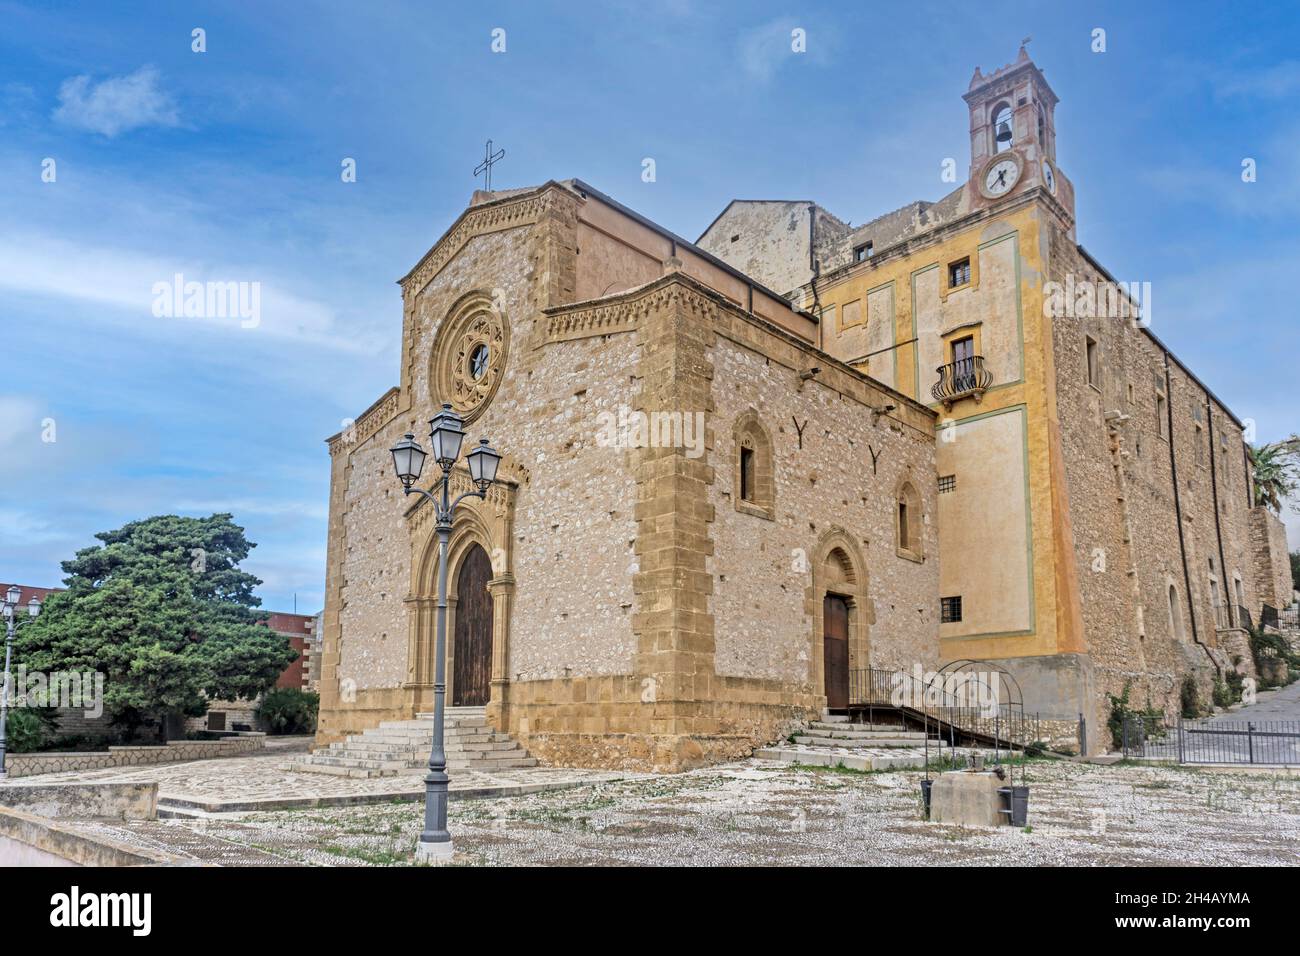 Die römisch-katholische Kirche des Heiligtums von Maria Santissima di Custonaci, Sizilien, Italien. Das ursprüngliche Gebäude stammt aus dem 16. Jahrhundert. Stockfoto